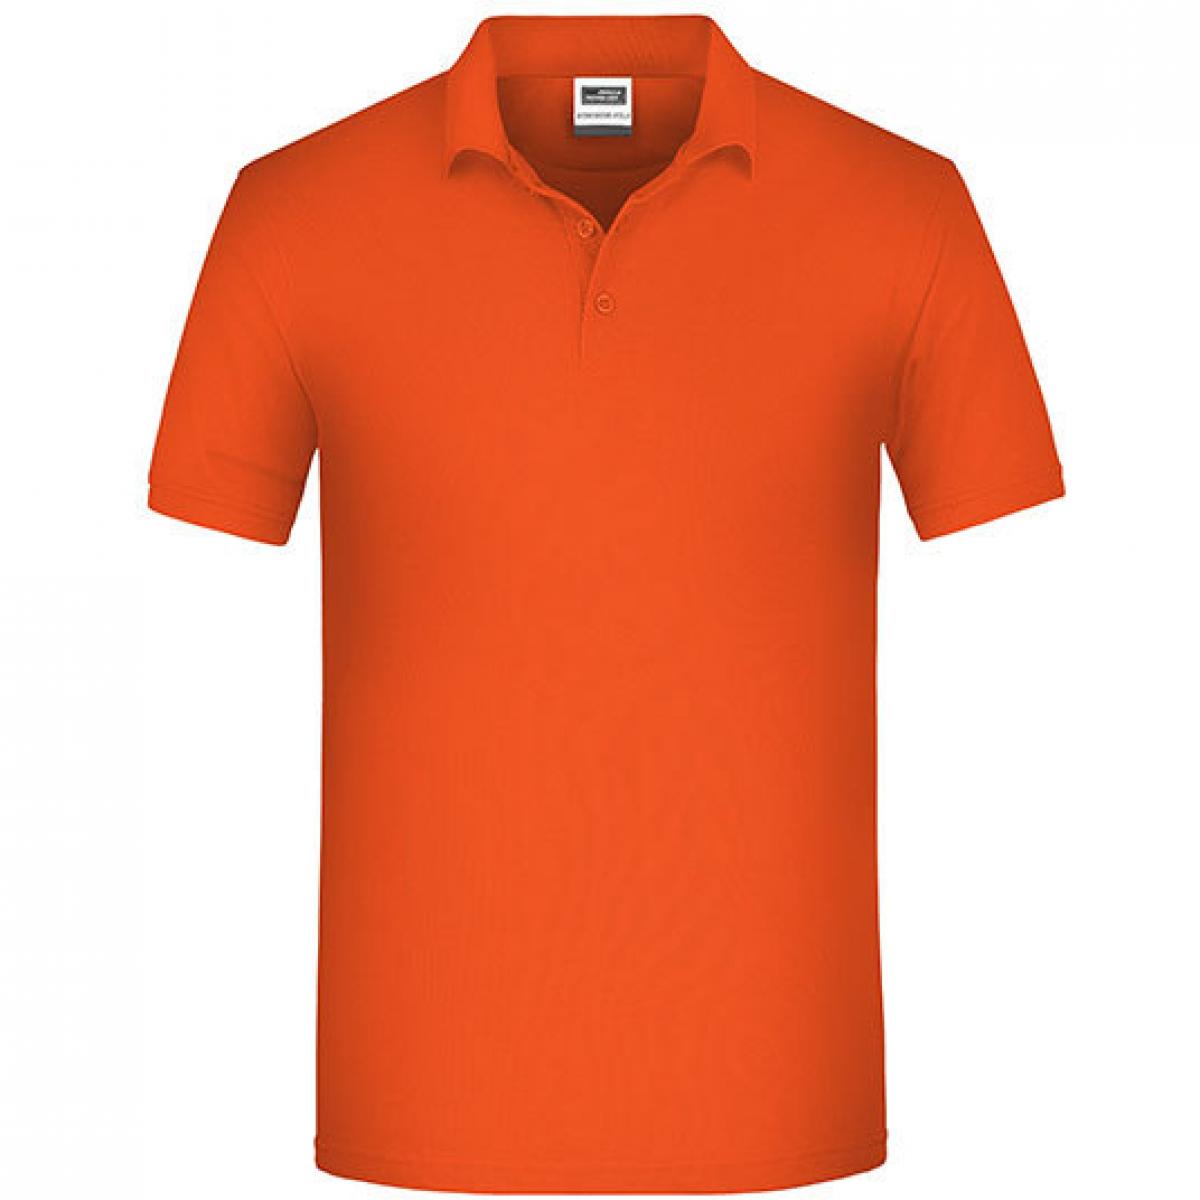 Hersteller: James+Nicholson Herstellernummer: JN874 Artikelbezeichnung: Herren Bio Workwear Polo, Bio-Baumwolle und Polyester Farbe: Orange